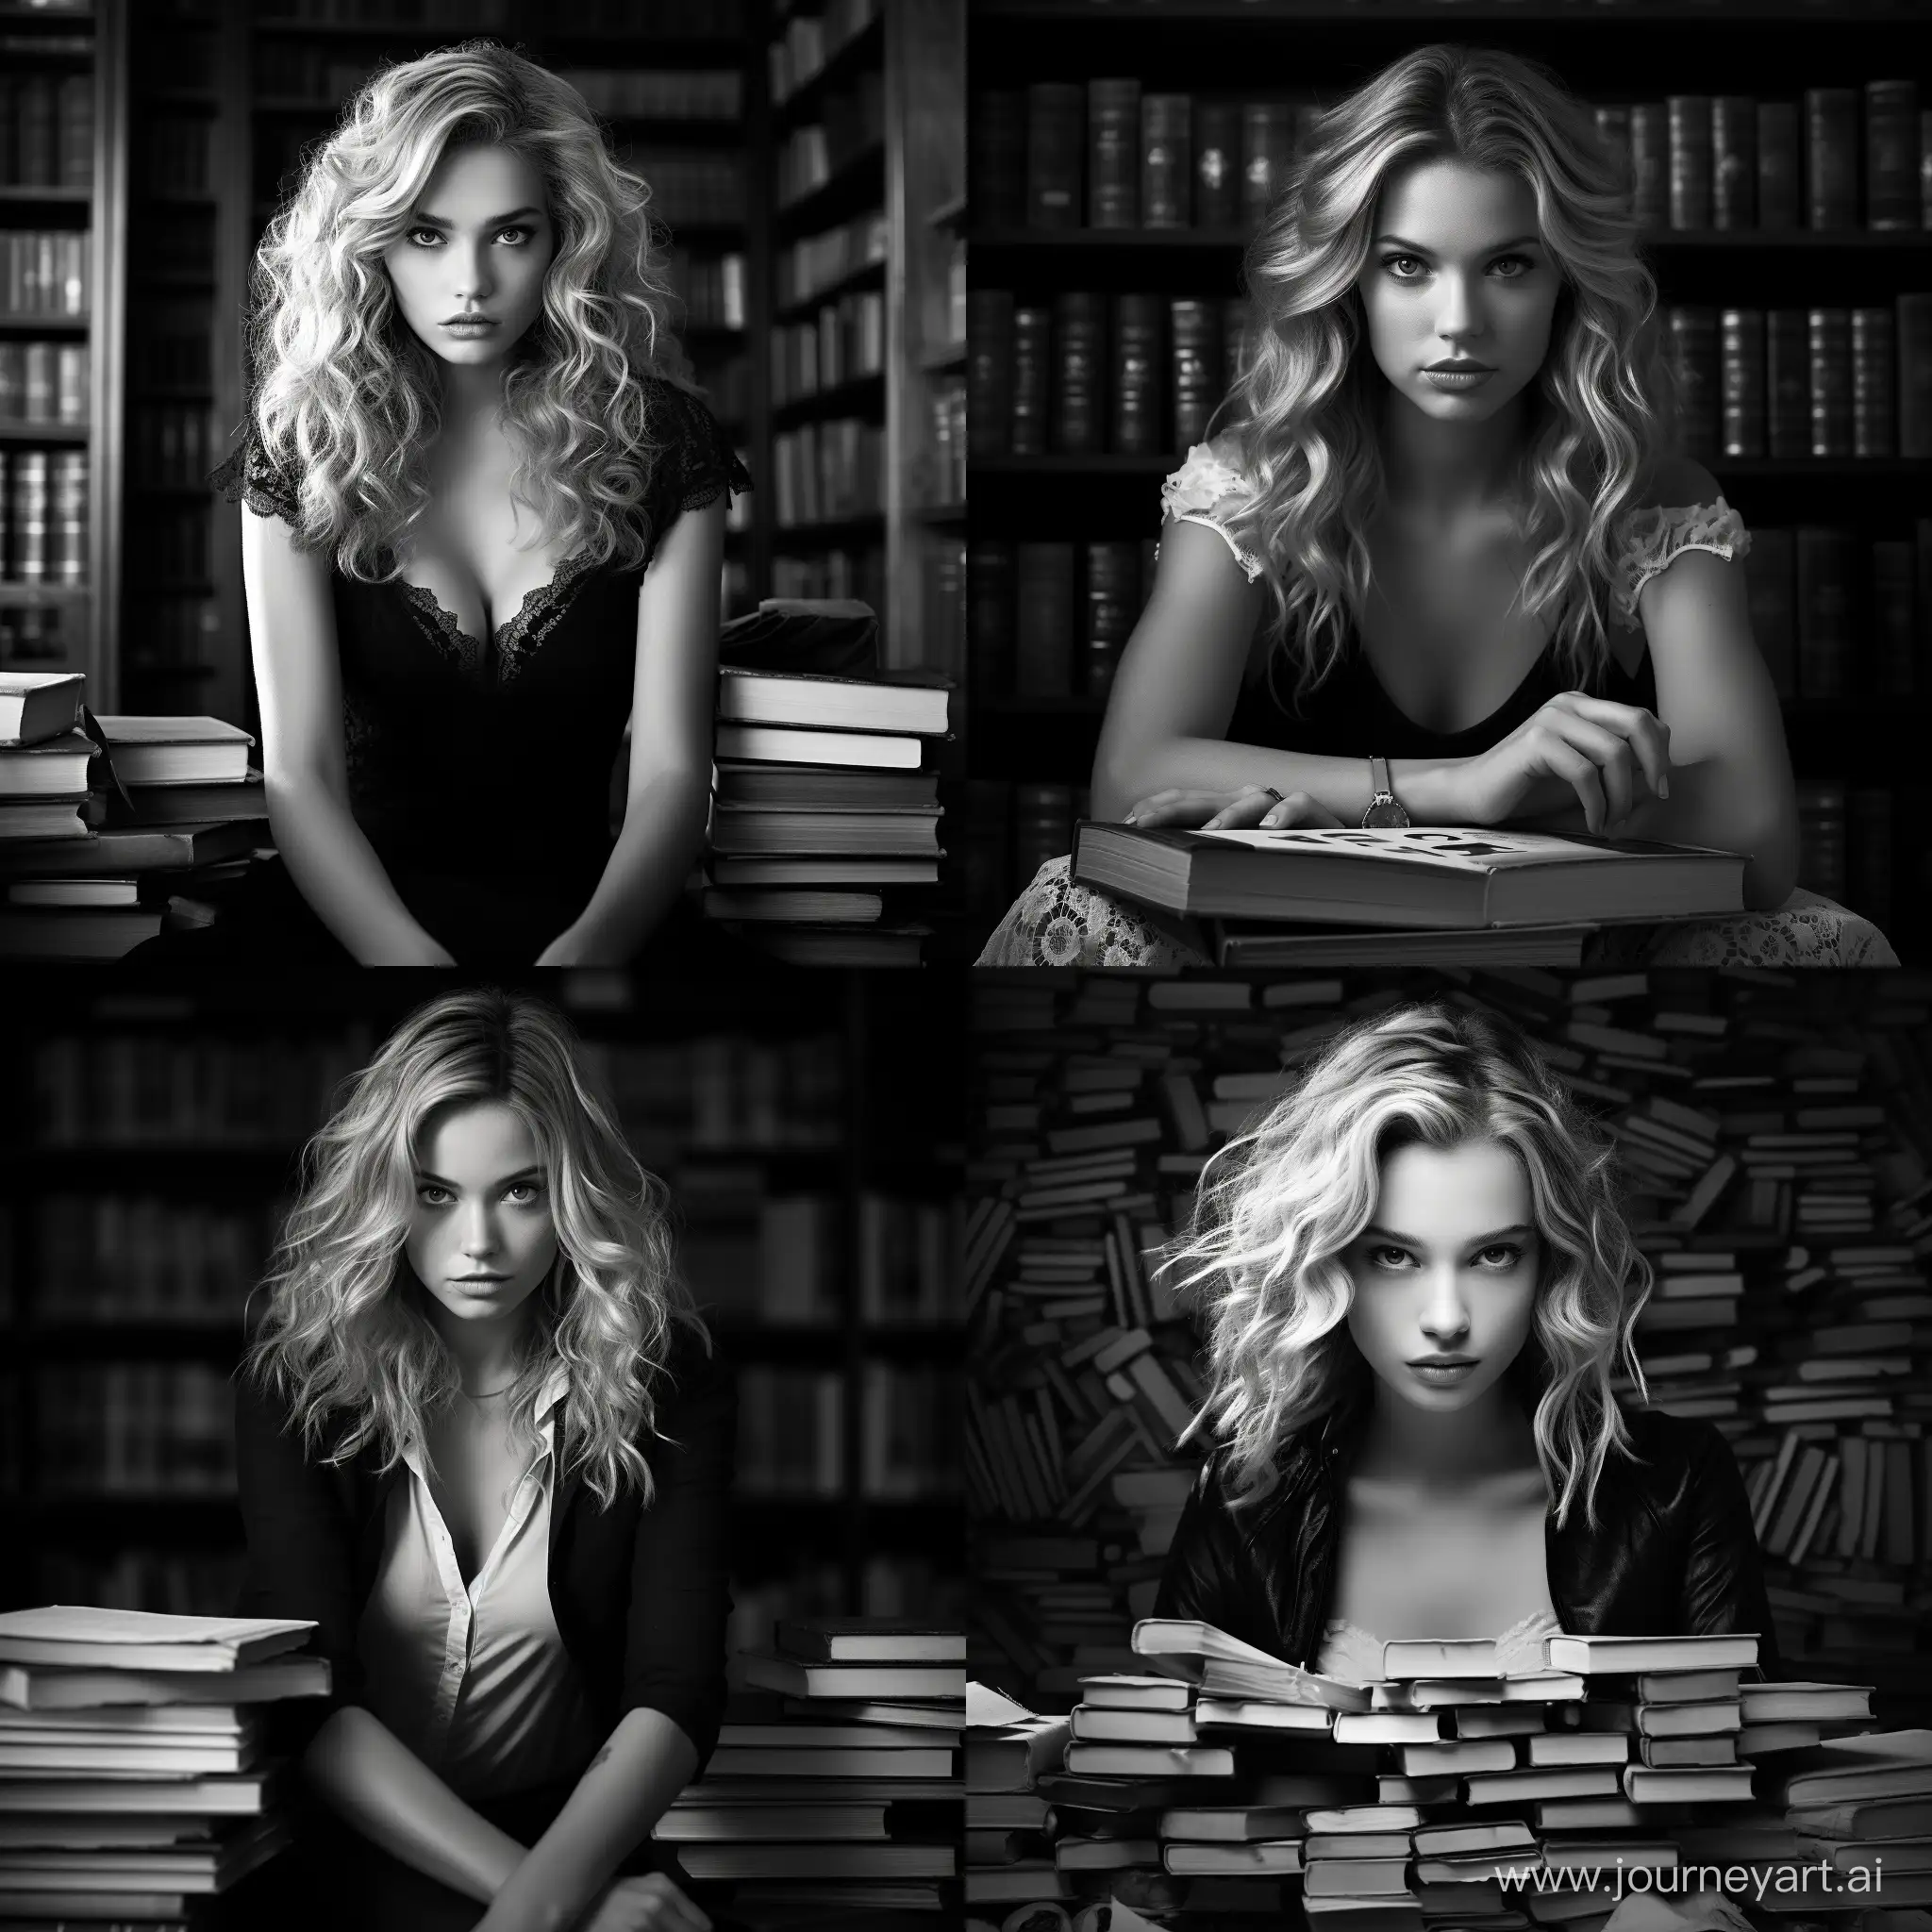 Создай фото черно-белое реалистичное, где мудрая девушка с русыми волосами и мудрыми глазами, на фоне книг, обладающая сильной женской энергией, готовая делиться своей мудростью